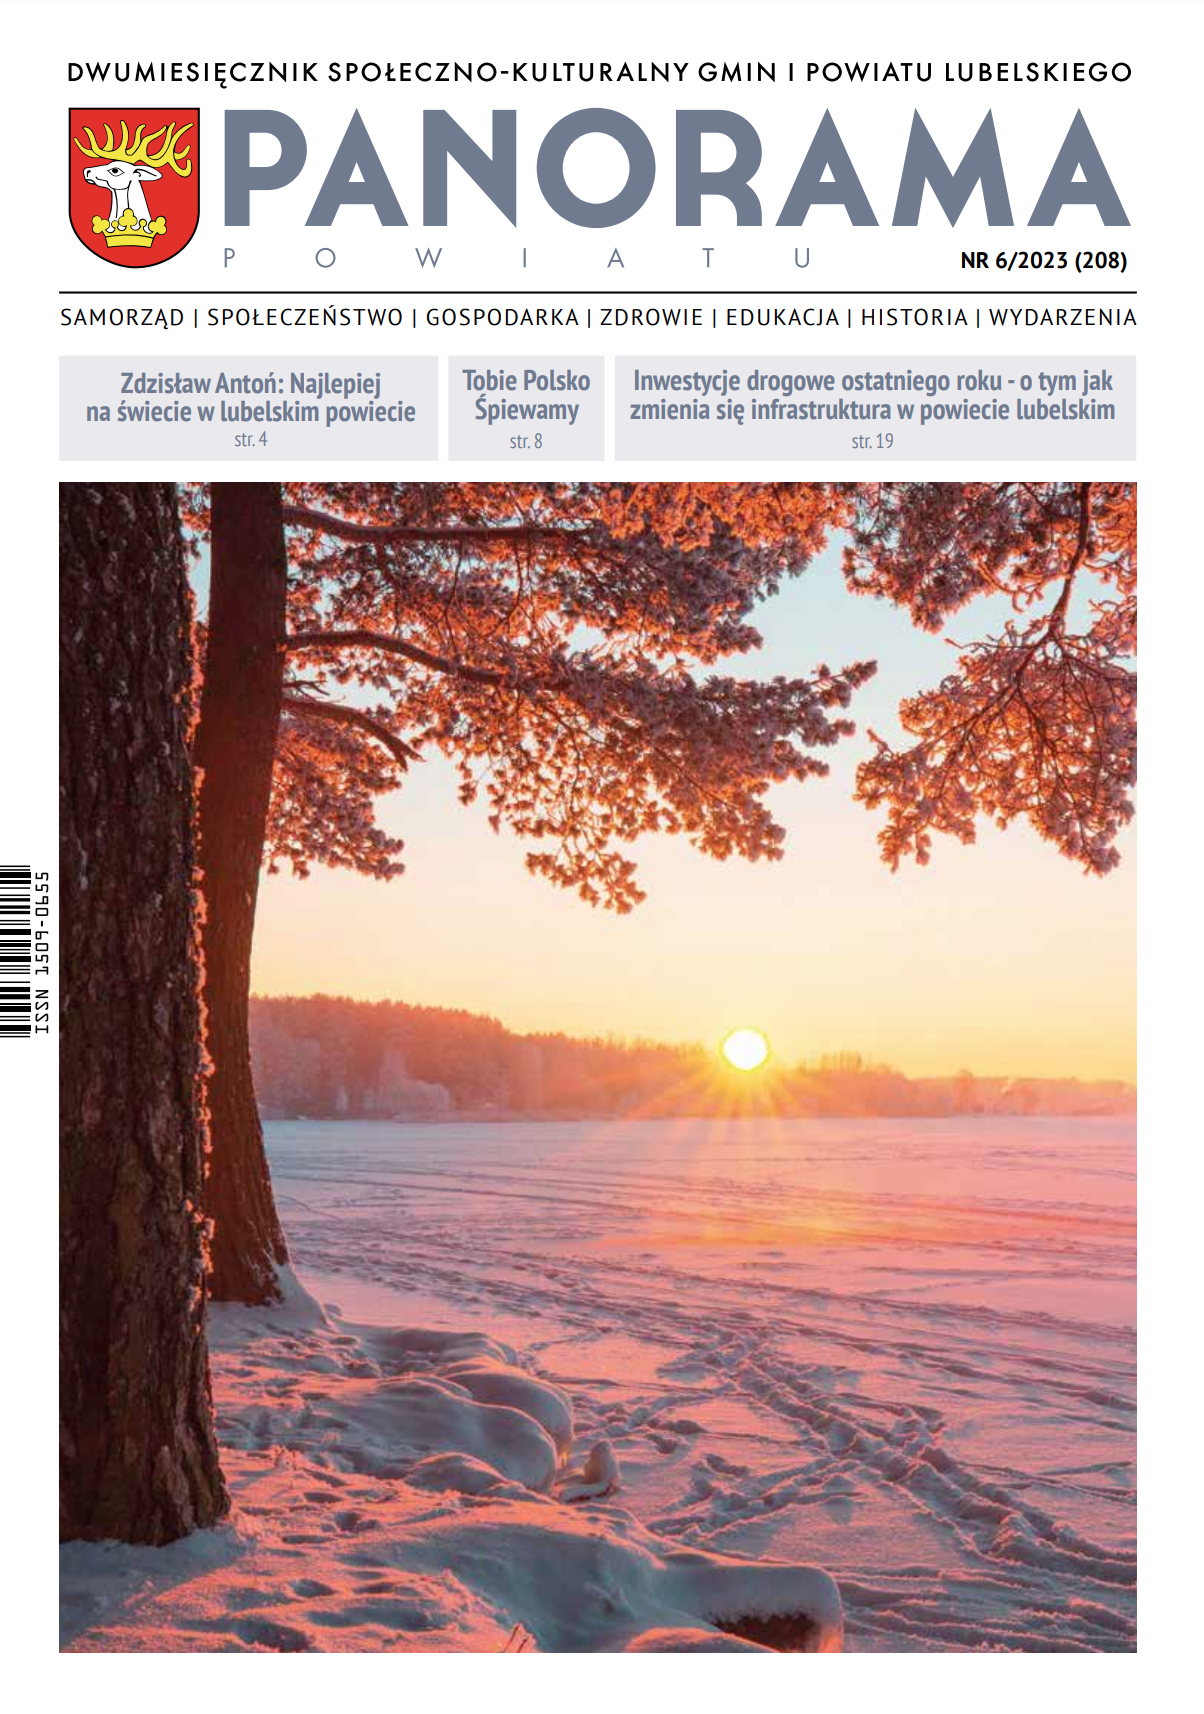 Okładka magazynu PANORAMA z widokiem drzewa w promieniach zachodzącego słońca, nadającego niebo i krajobraz tonację w odcieniach pomarańczowo-różowych.